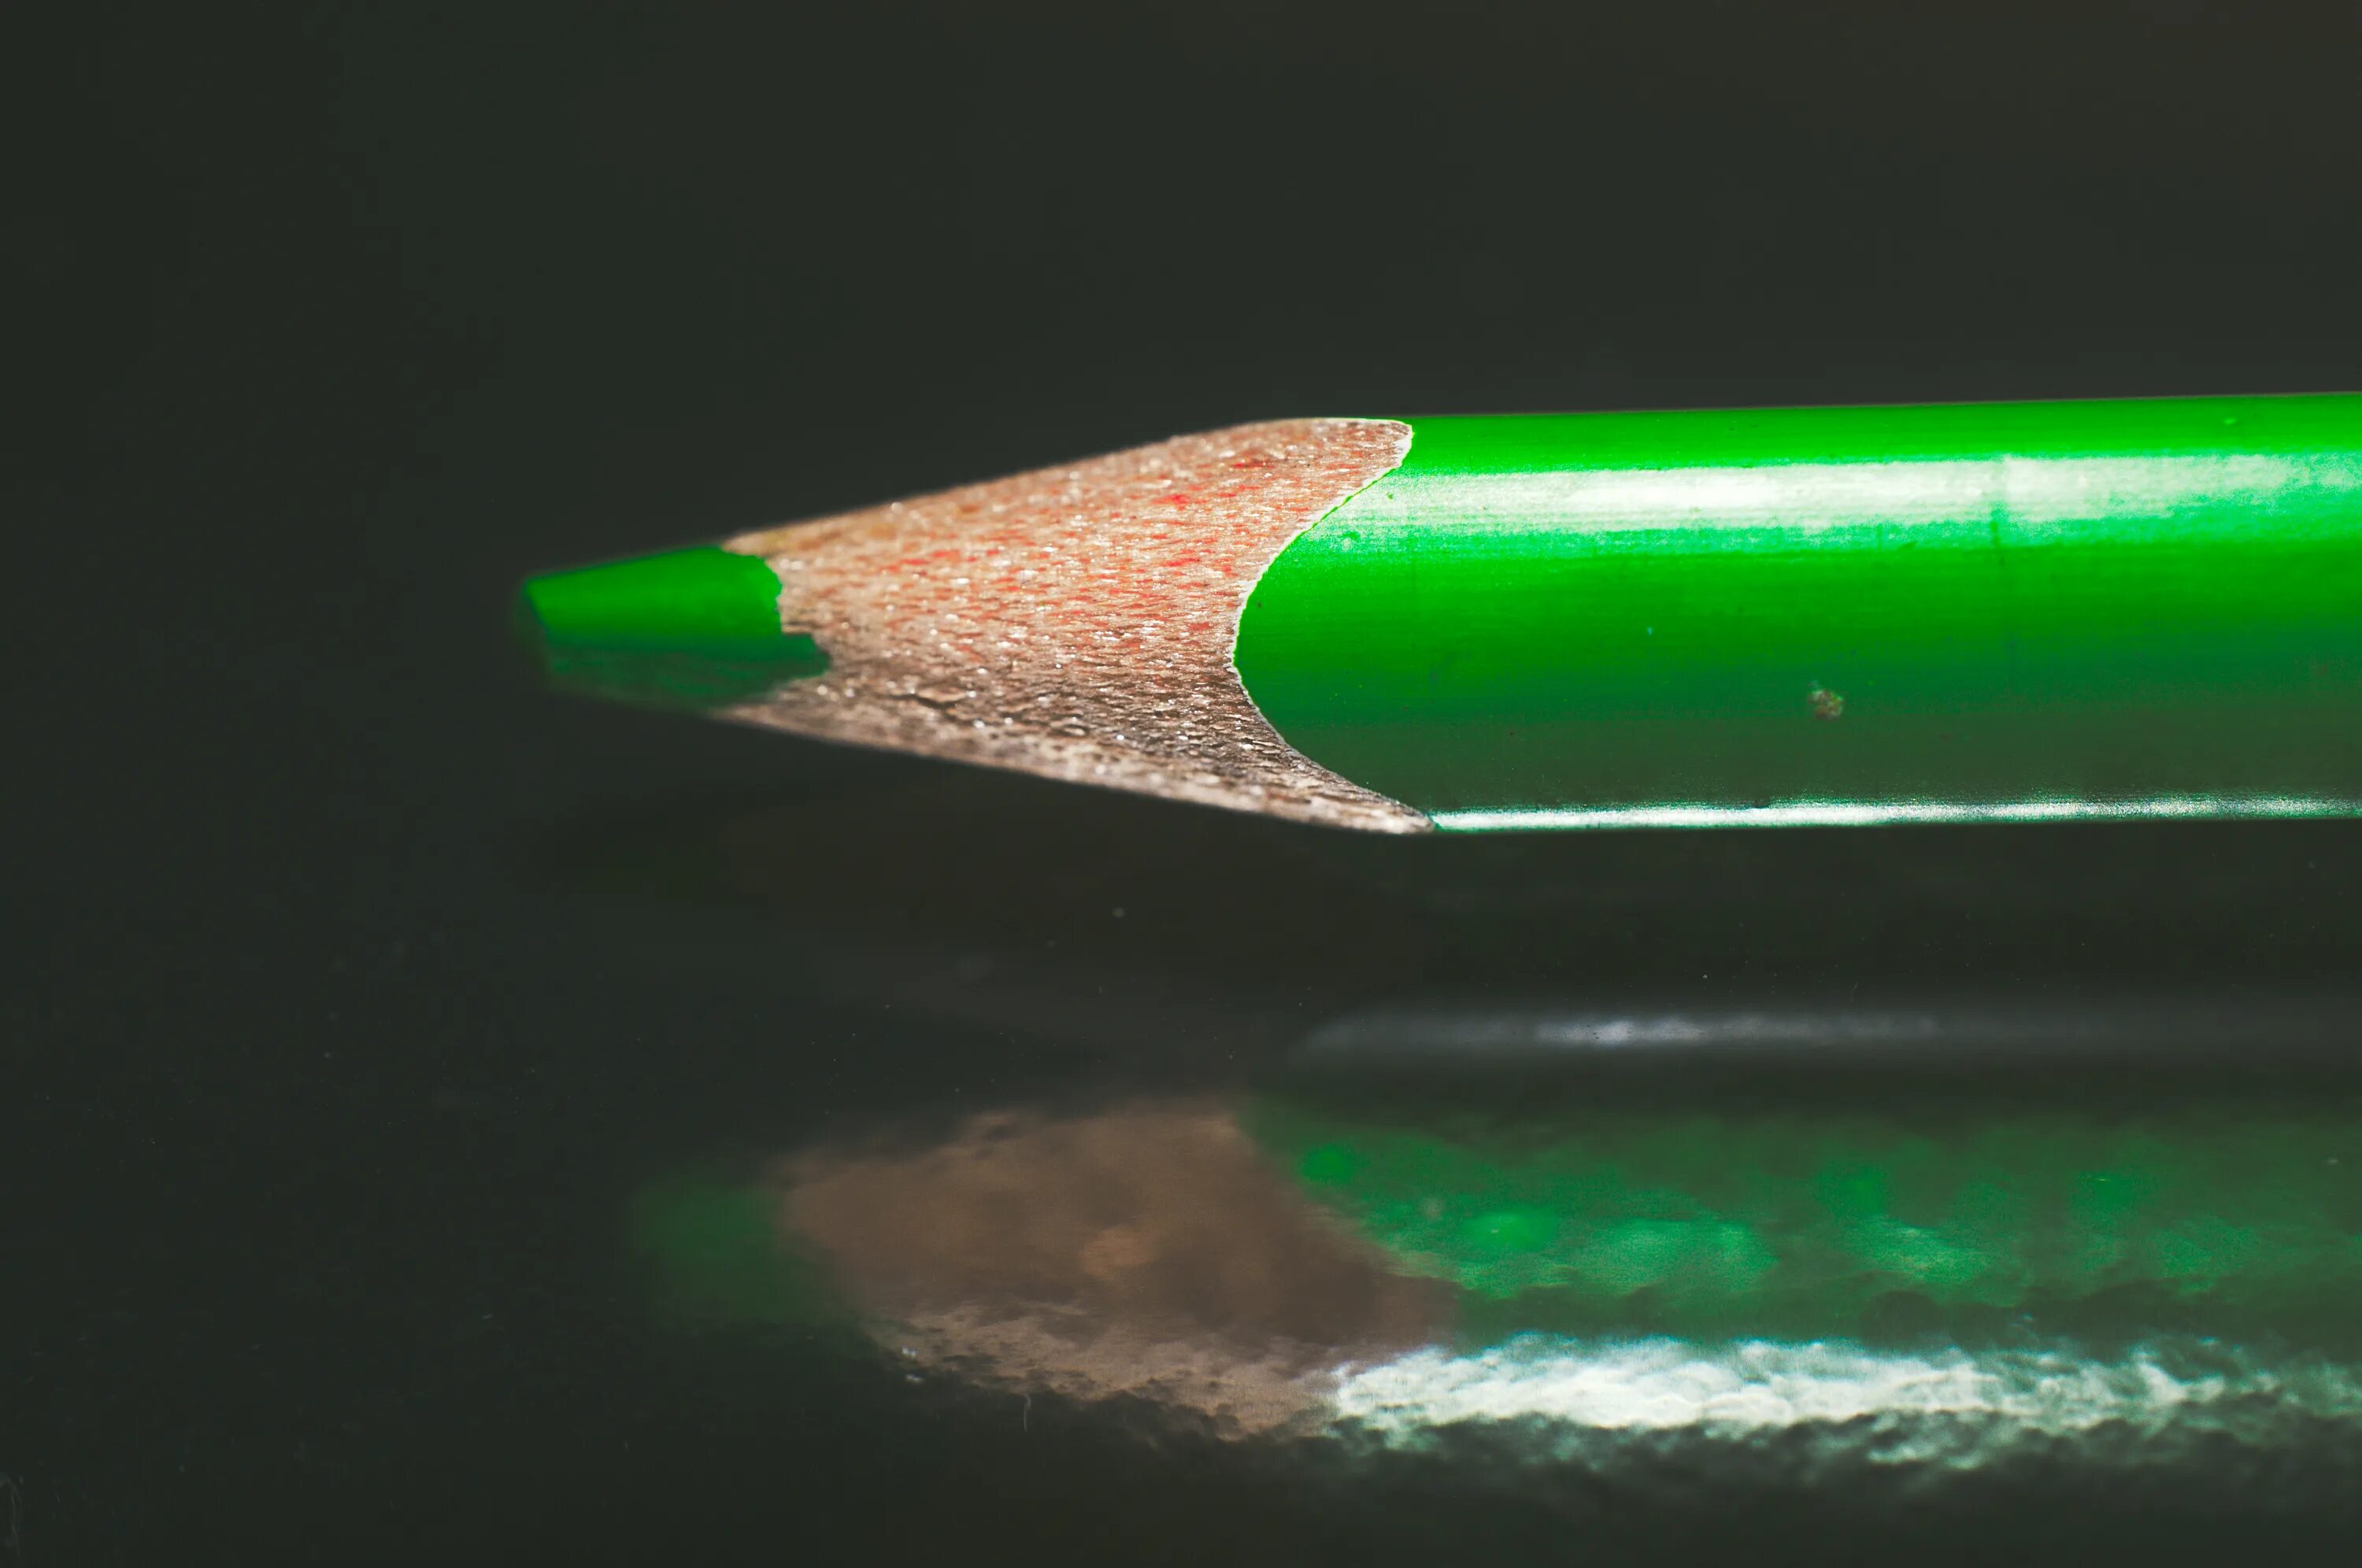 Купить зеленый карандаш. Зеленый карандаш. Салатовый карандаш. Карандаш зеленого цвета. Цветные карандаши зеленые.